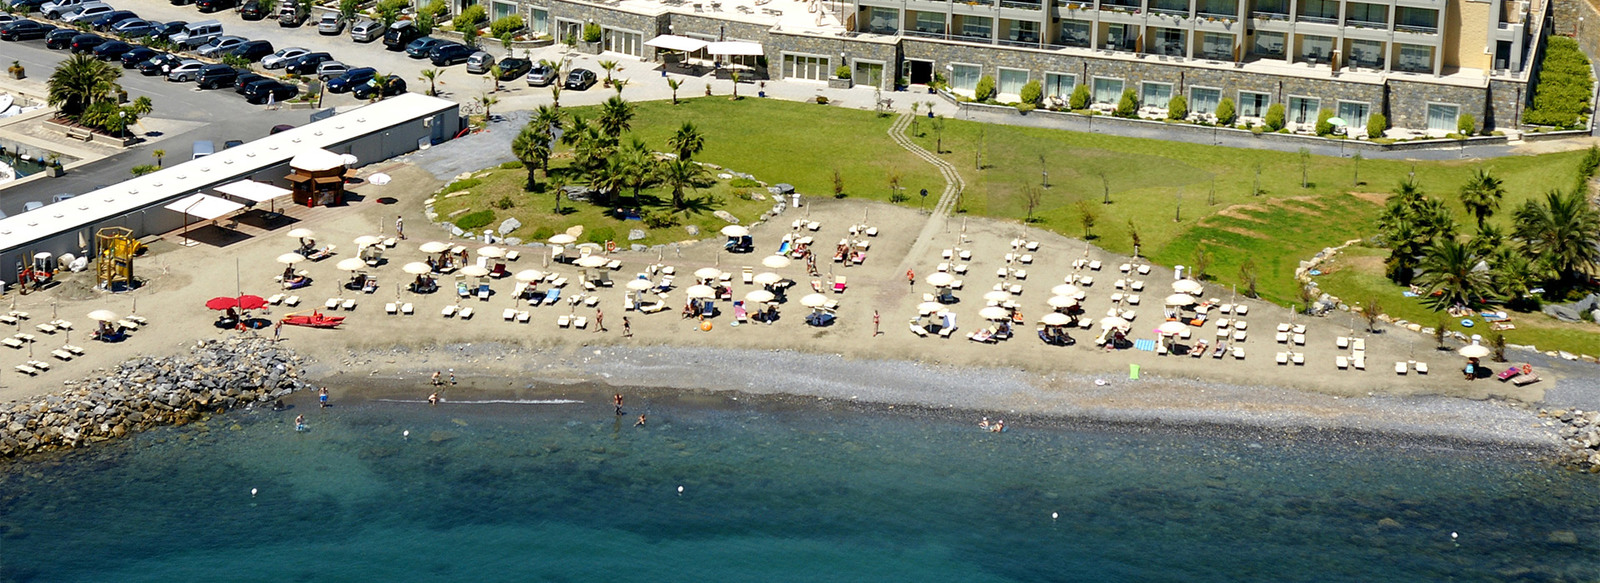 Liguria, Hotel 4* a Santo Stefano al Mare, mezza pensione, spiaggia inclusa, da € 105 a persona per soggiorno